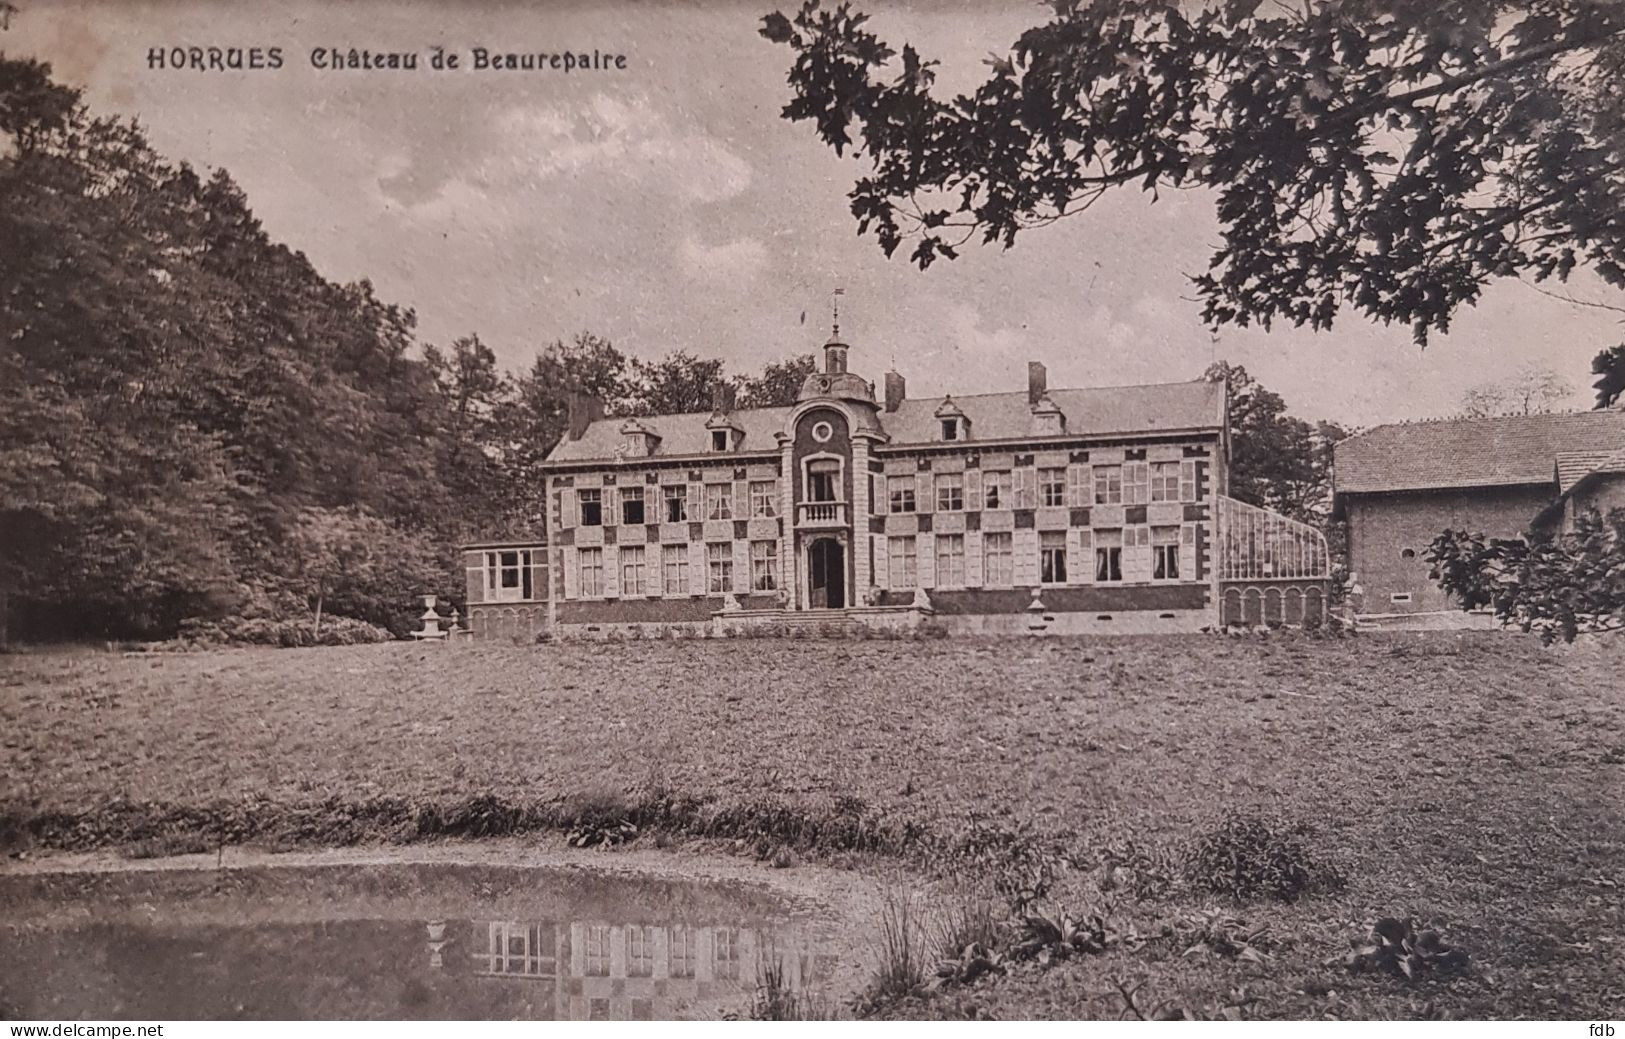 Horrues - Château Beaurepaire - Soignies